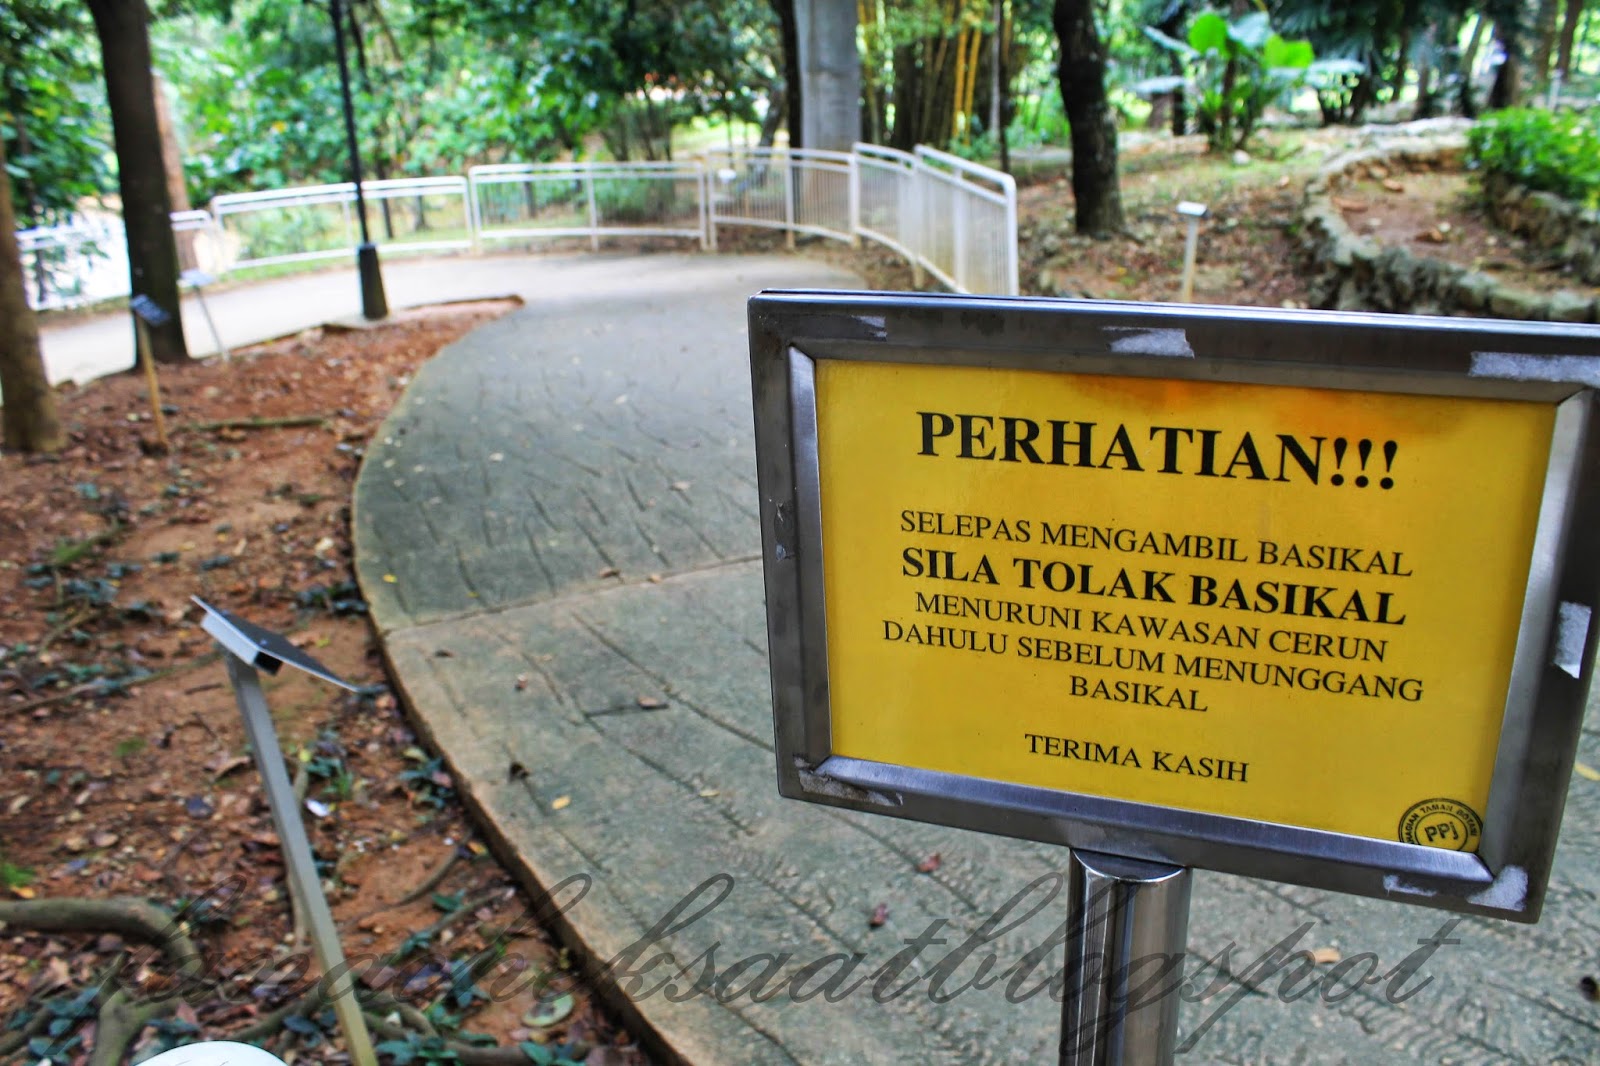 Sewa Basikal Taman Botani Putrajaya